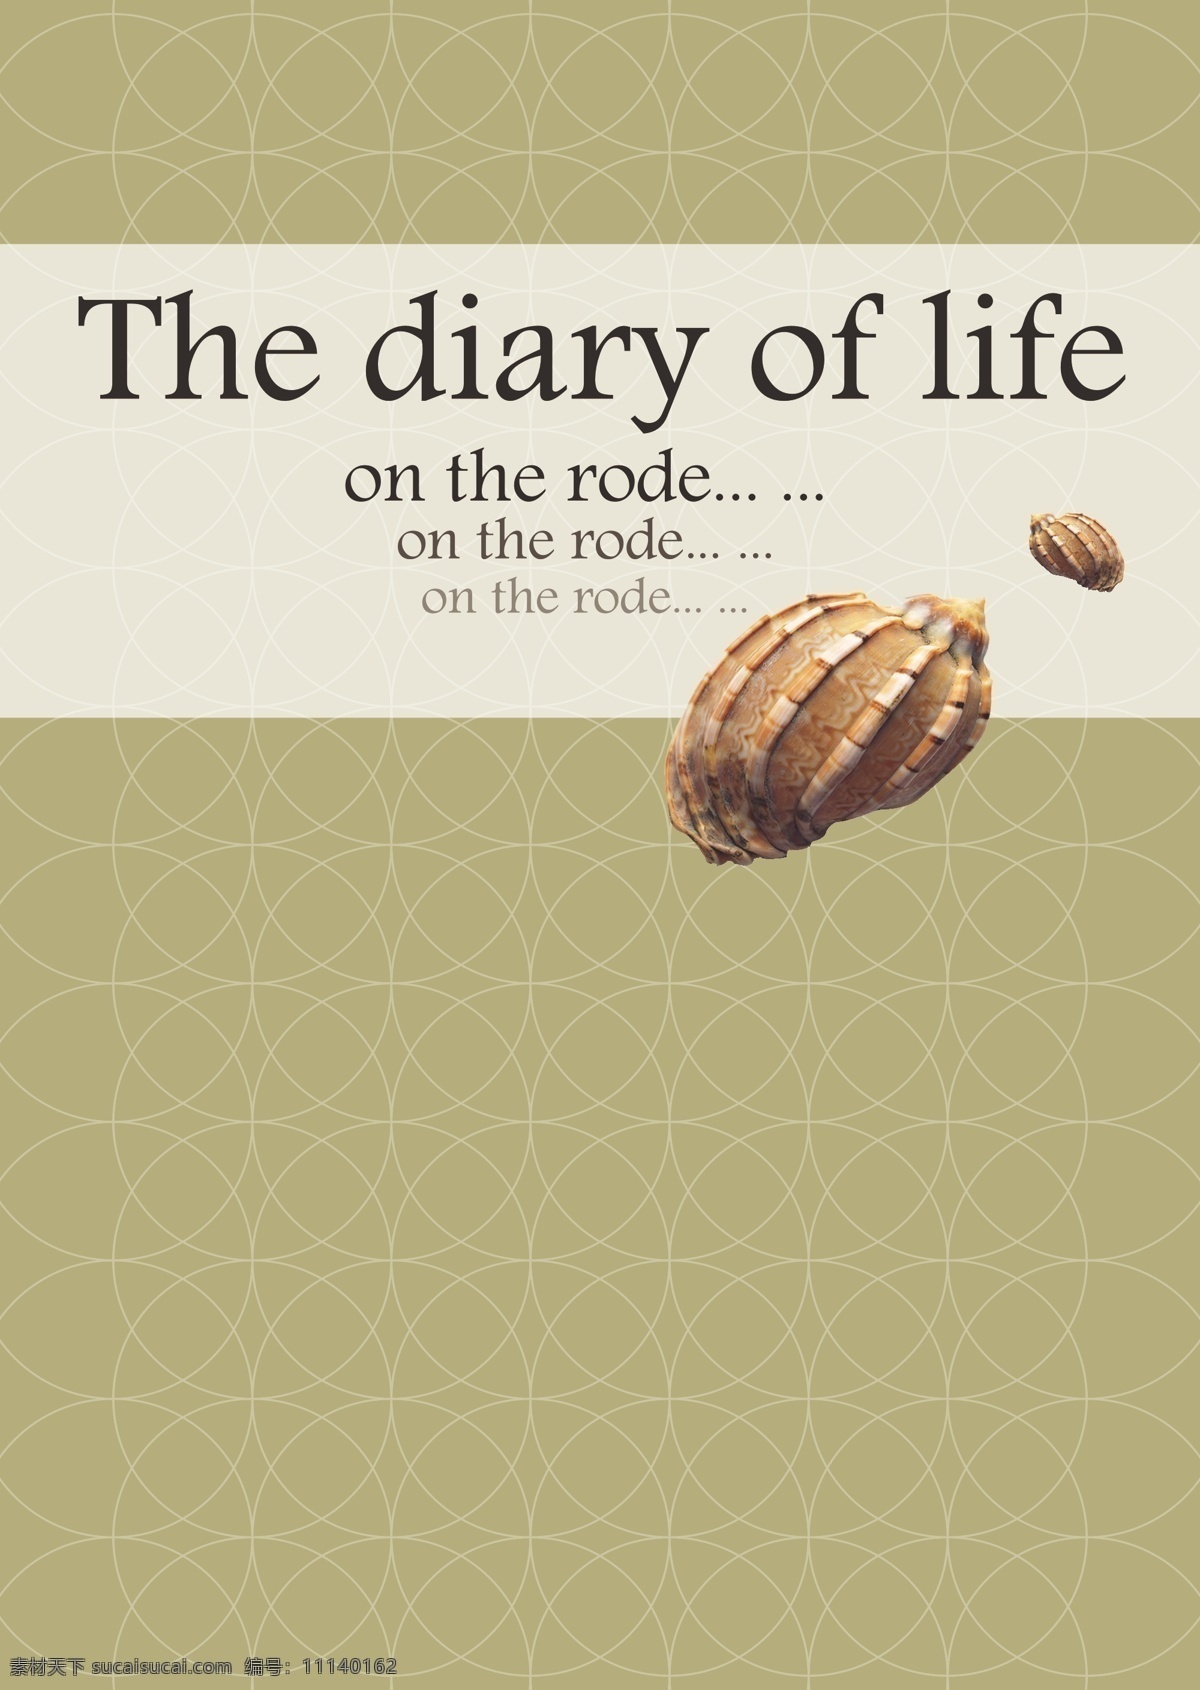 贝壳 封面 of the 简约大方 diary life 矢量图 其他矢量图